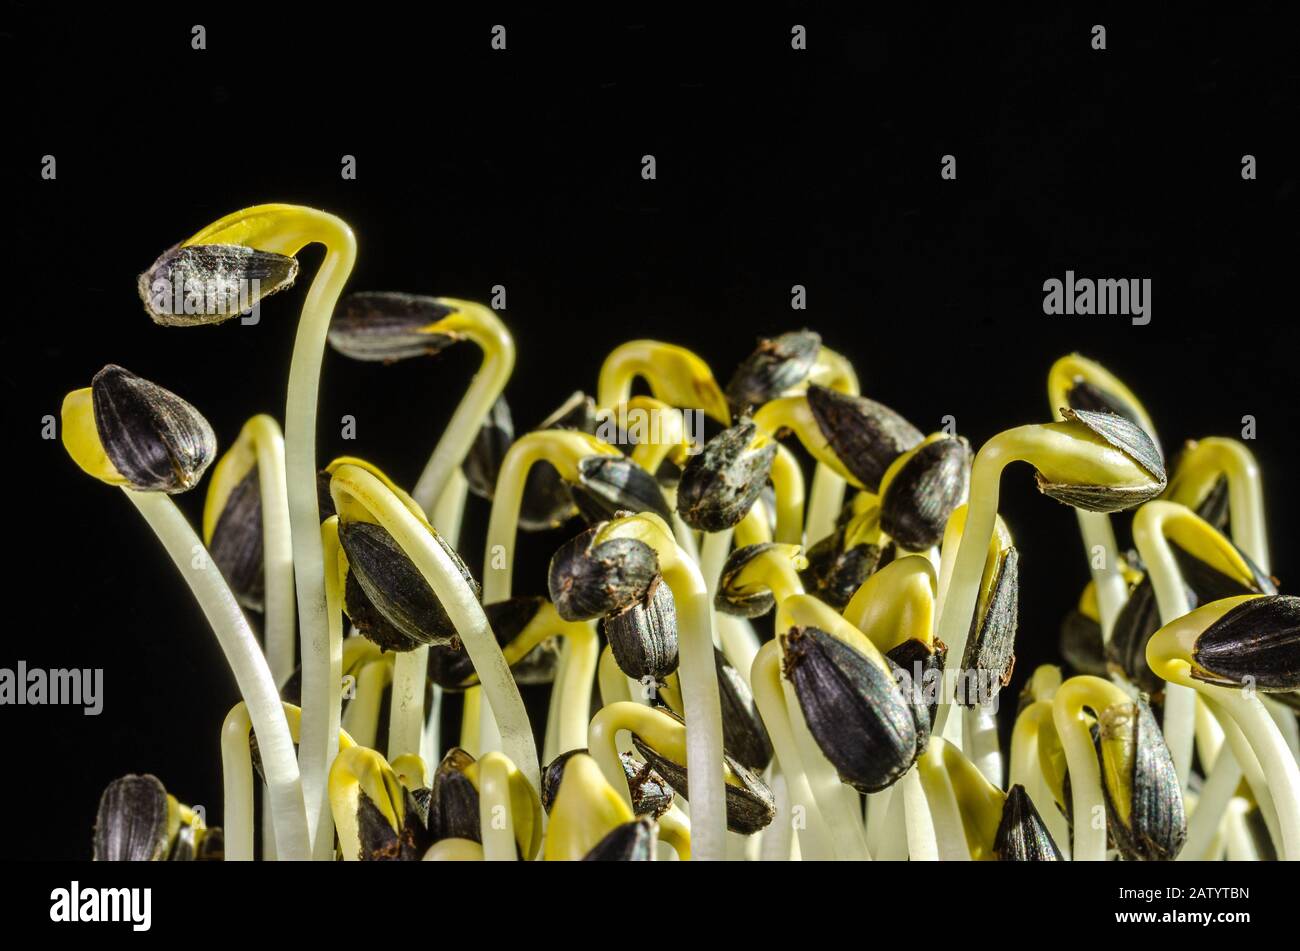 Sonnenblumensprosse im Sonnenlicht auf schwarzem Grund. Sprosse und Mikrogrün von Helianthus annuus, der gemeinsamen Sonnenblume. Essbare Sämlinge. Stockfoto